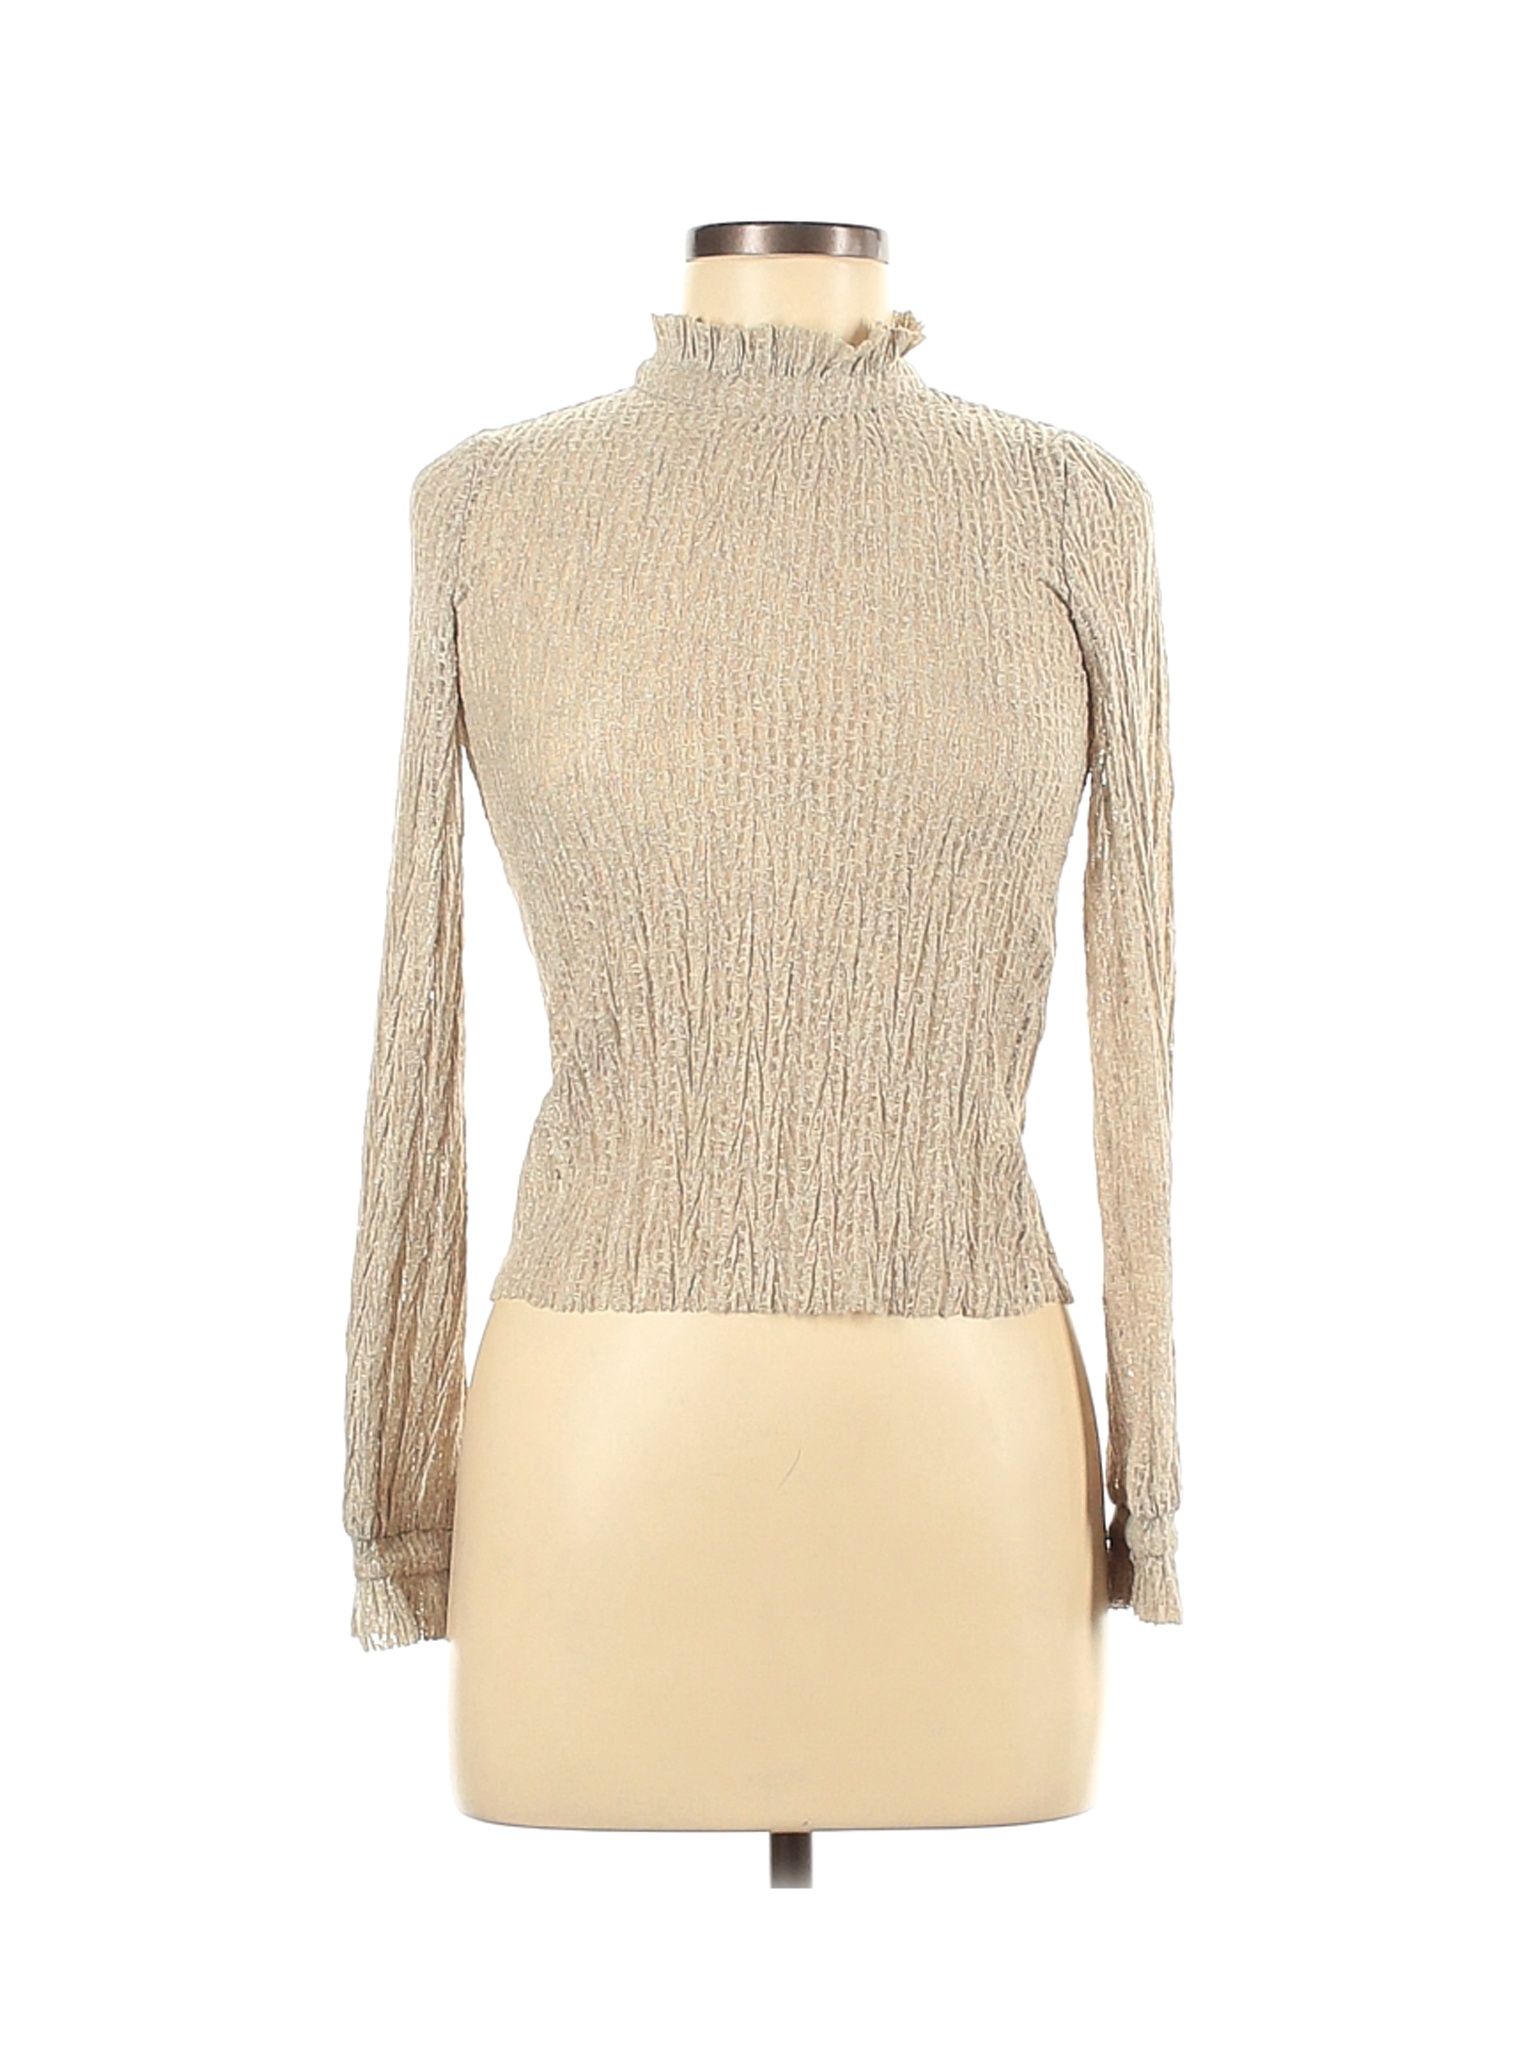 Zara Women Brown Long Sleeve Top S | eBay